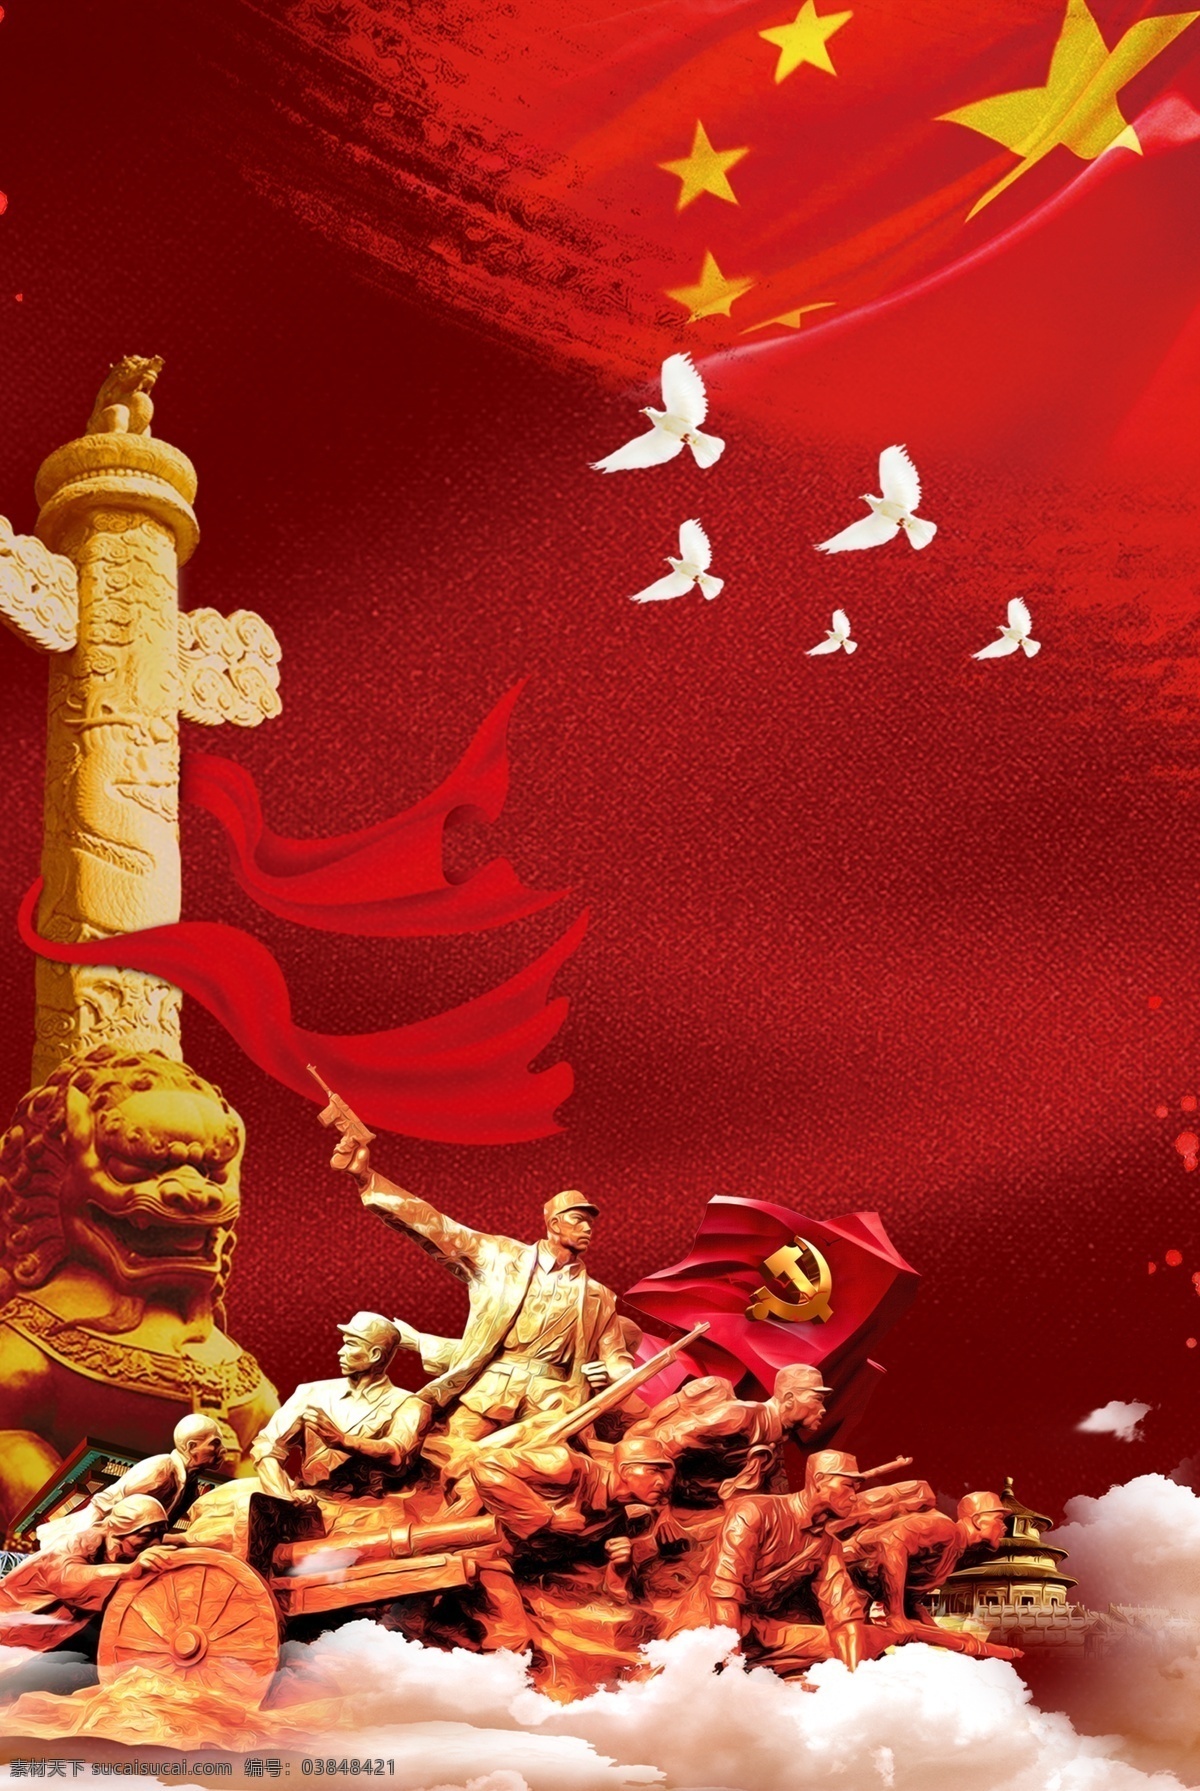 创意 合成 抗战 胜利 周年 背景 战士 国旗 红色 天安门 烈士 抗战胜利